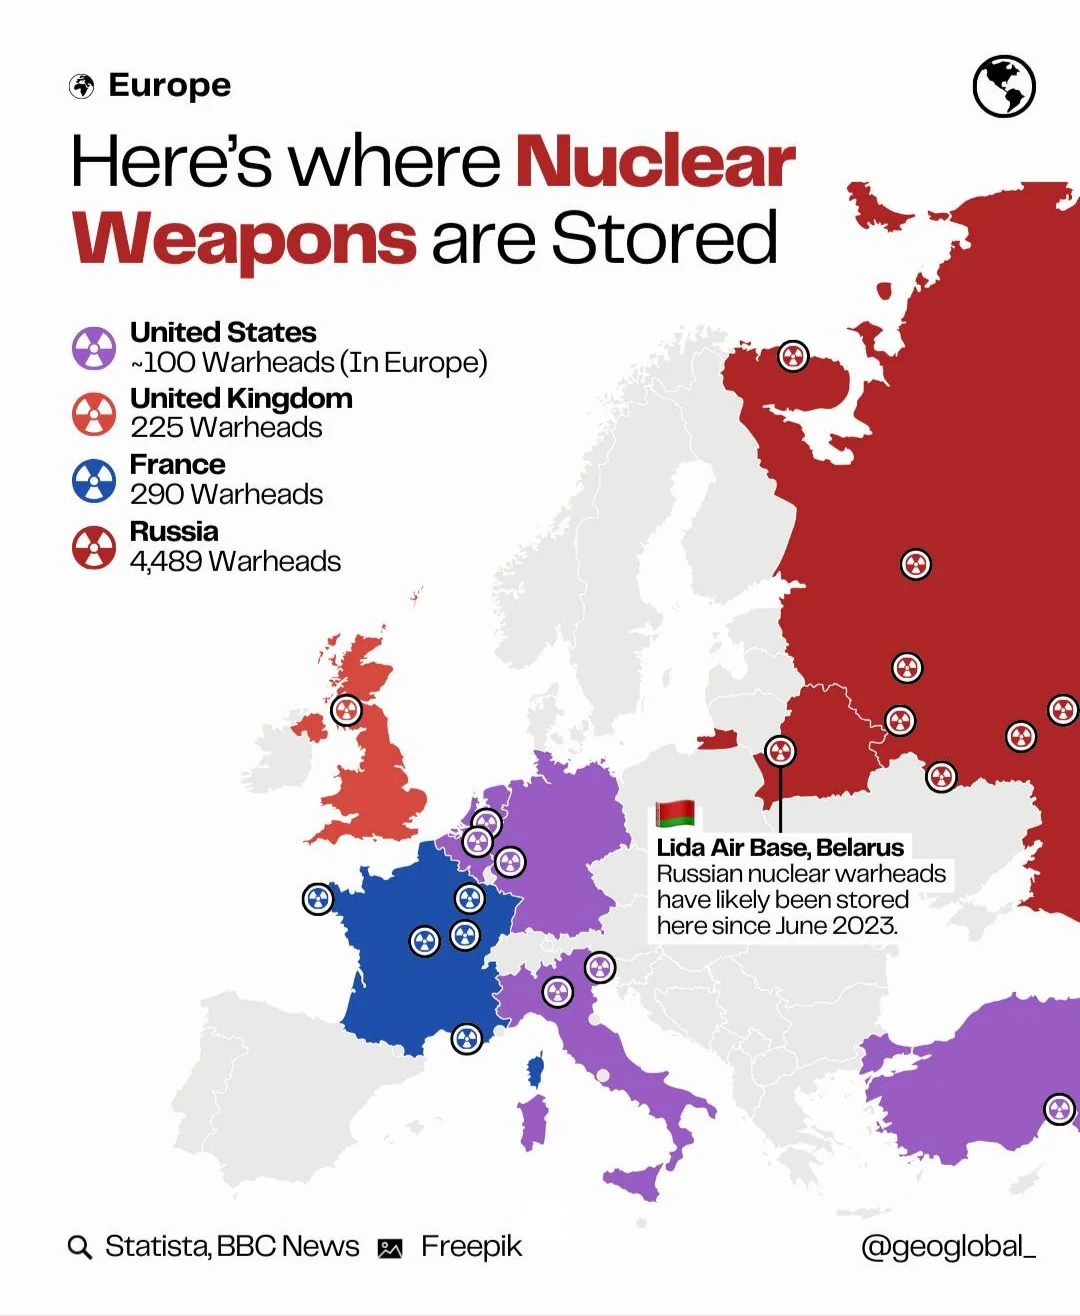 Dónde está almacenado todo el arsenal nucIear de Europa